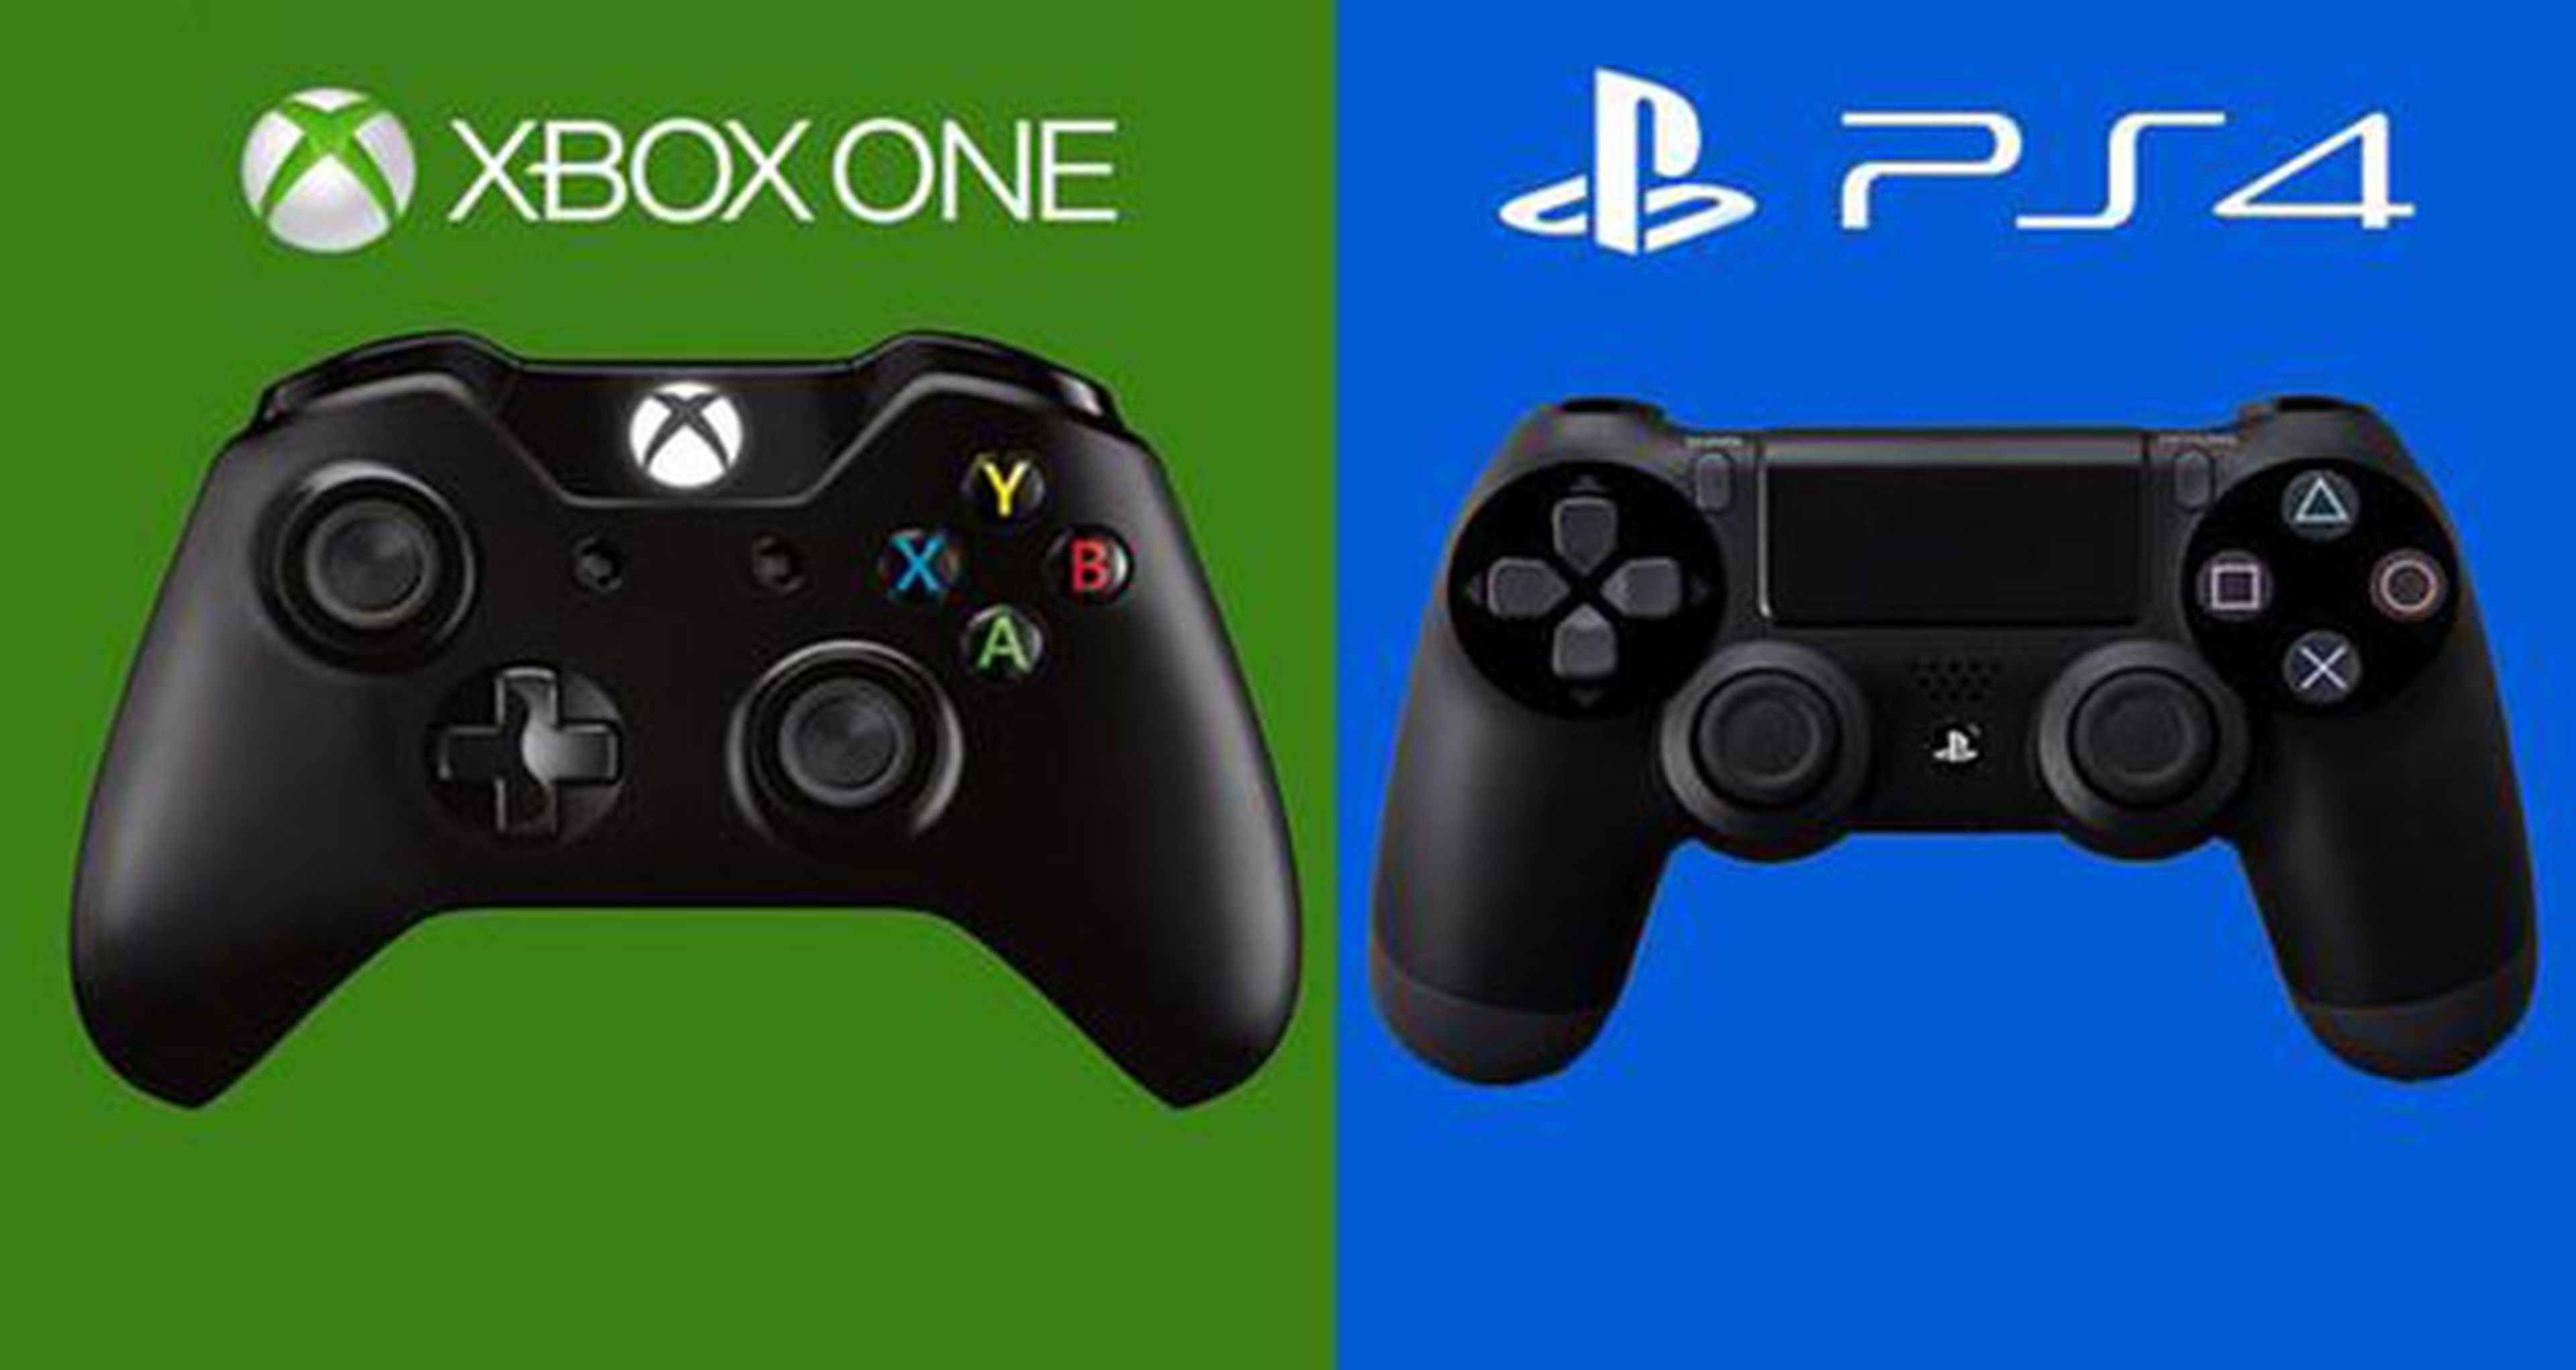 Xbox One va a ser el sistema más vendido en el Black Friday según la auditora Infoscout